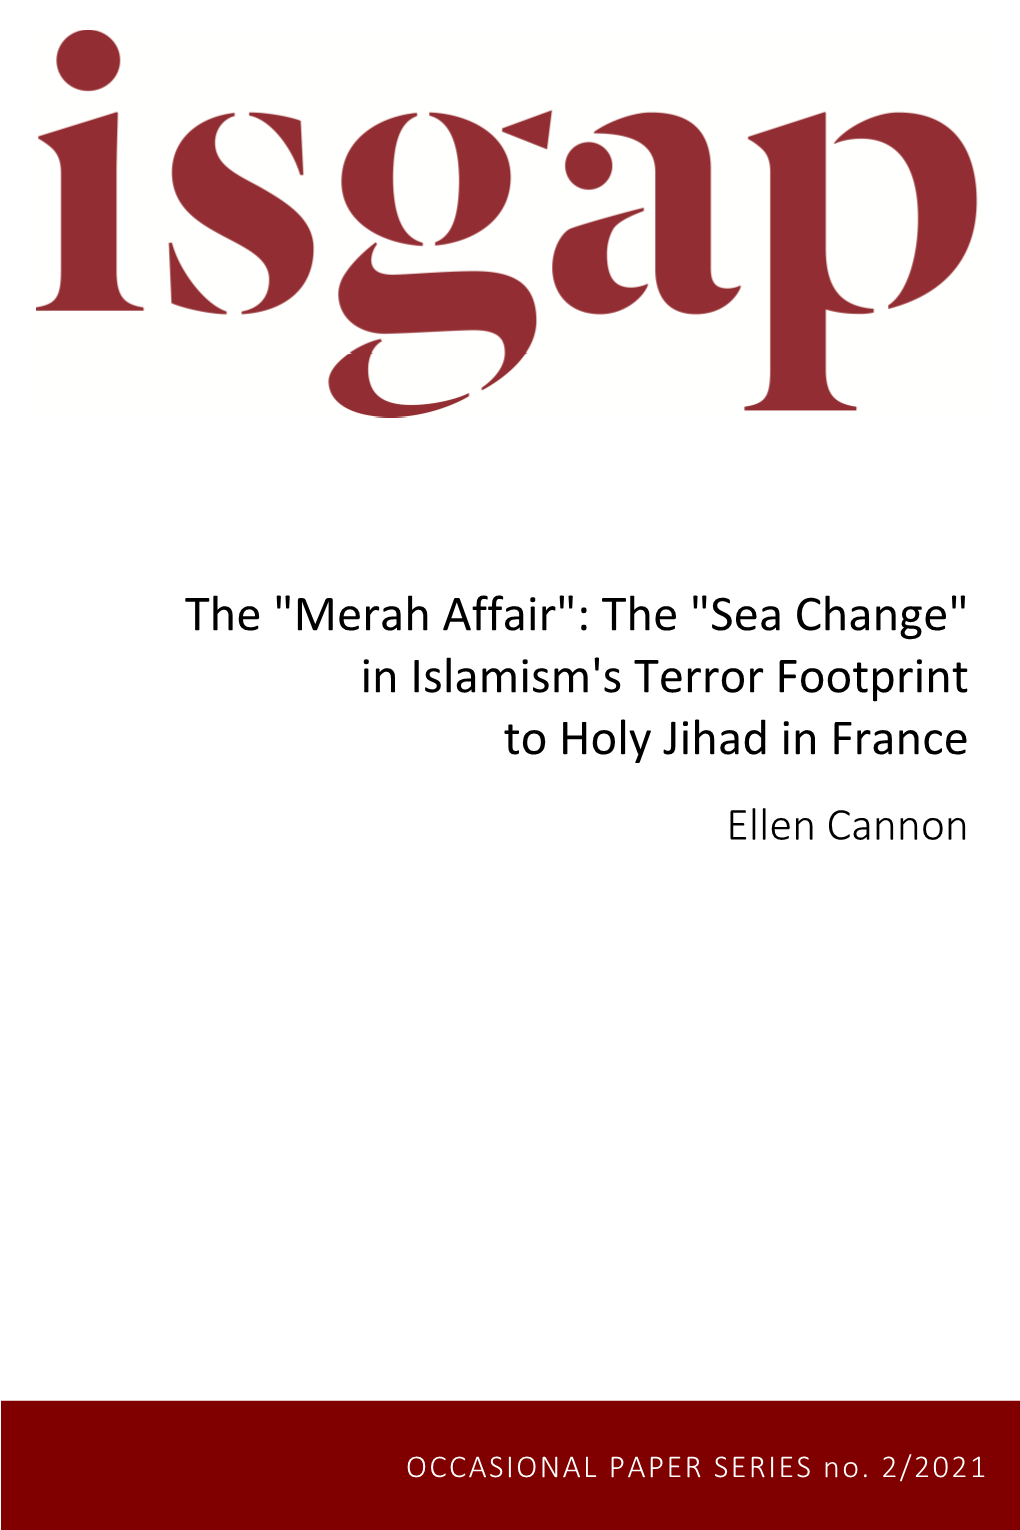 "Sea Change" in Islamism's Terror Footprint to Holy Jihad in France Ellen Cannon